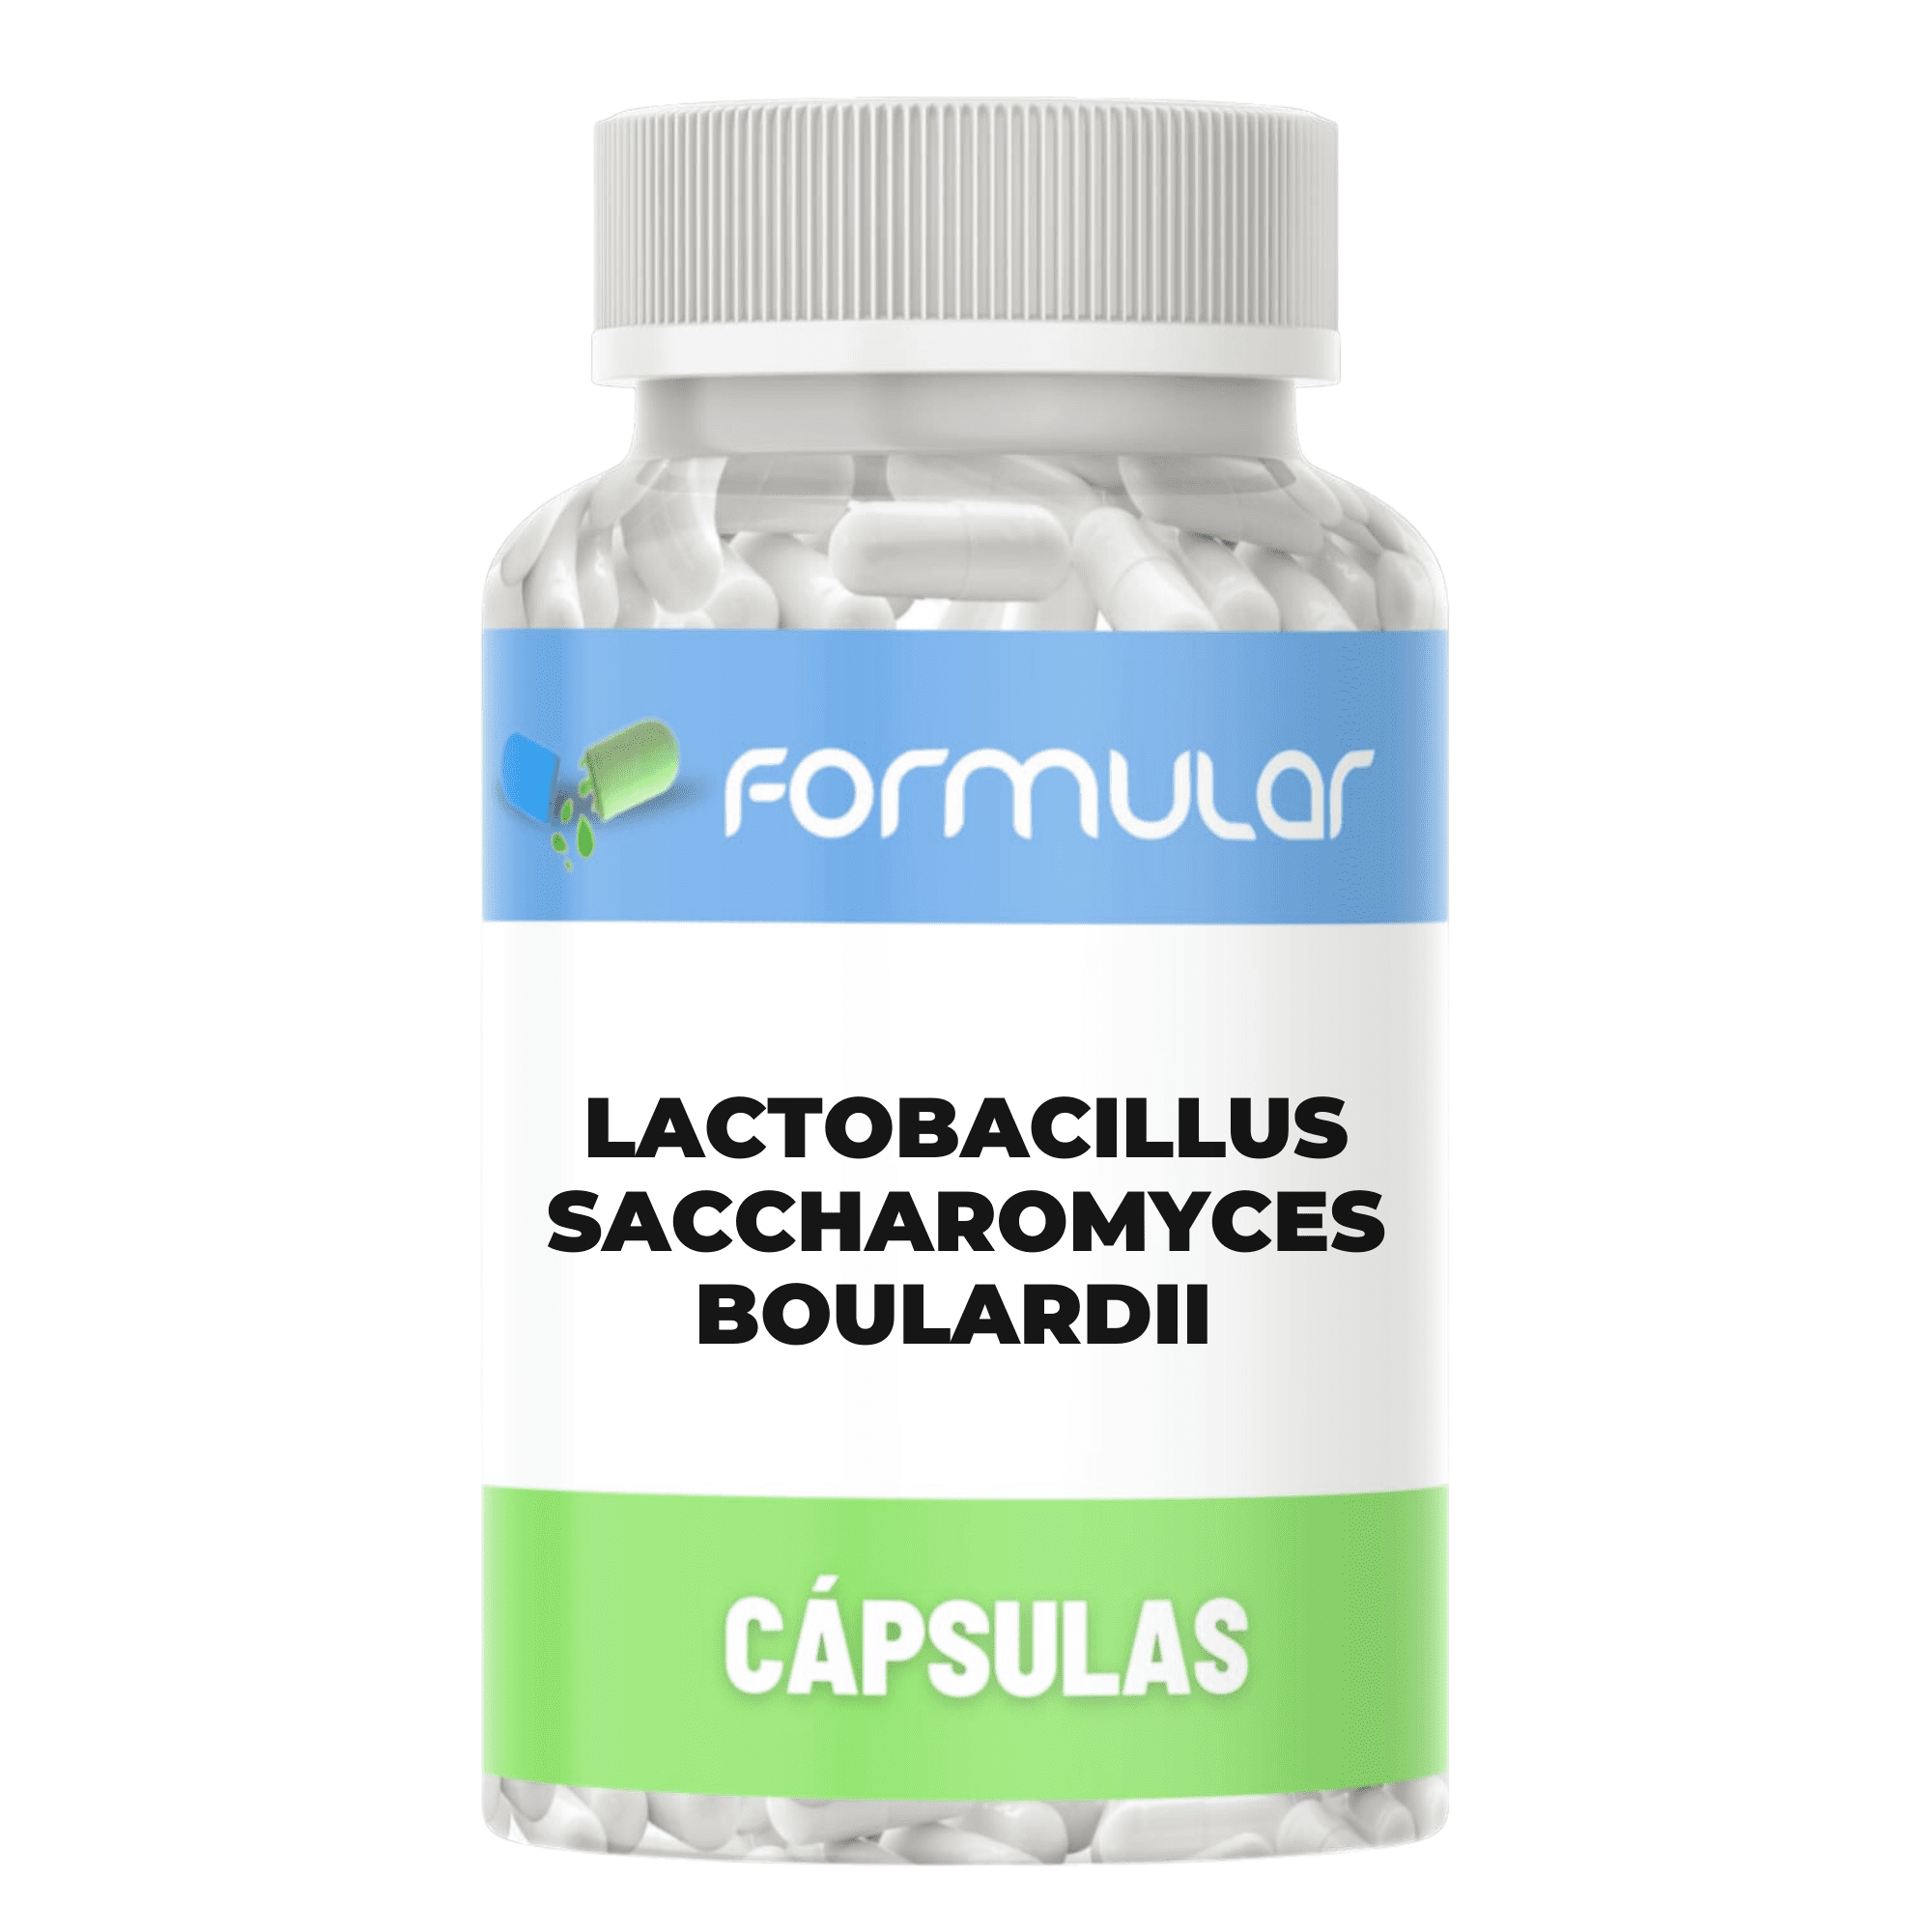 Lactobacillus Saccharomyces Boulardii 1 bilhão - Cápsulas